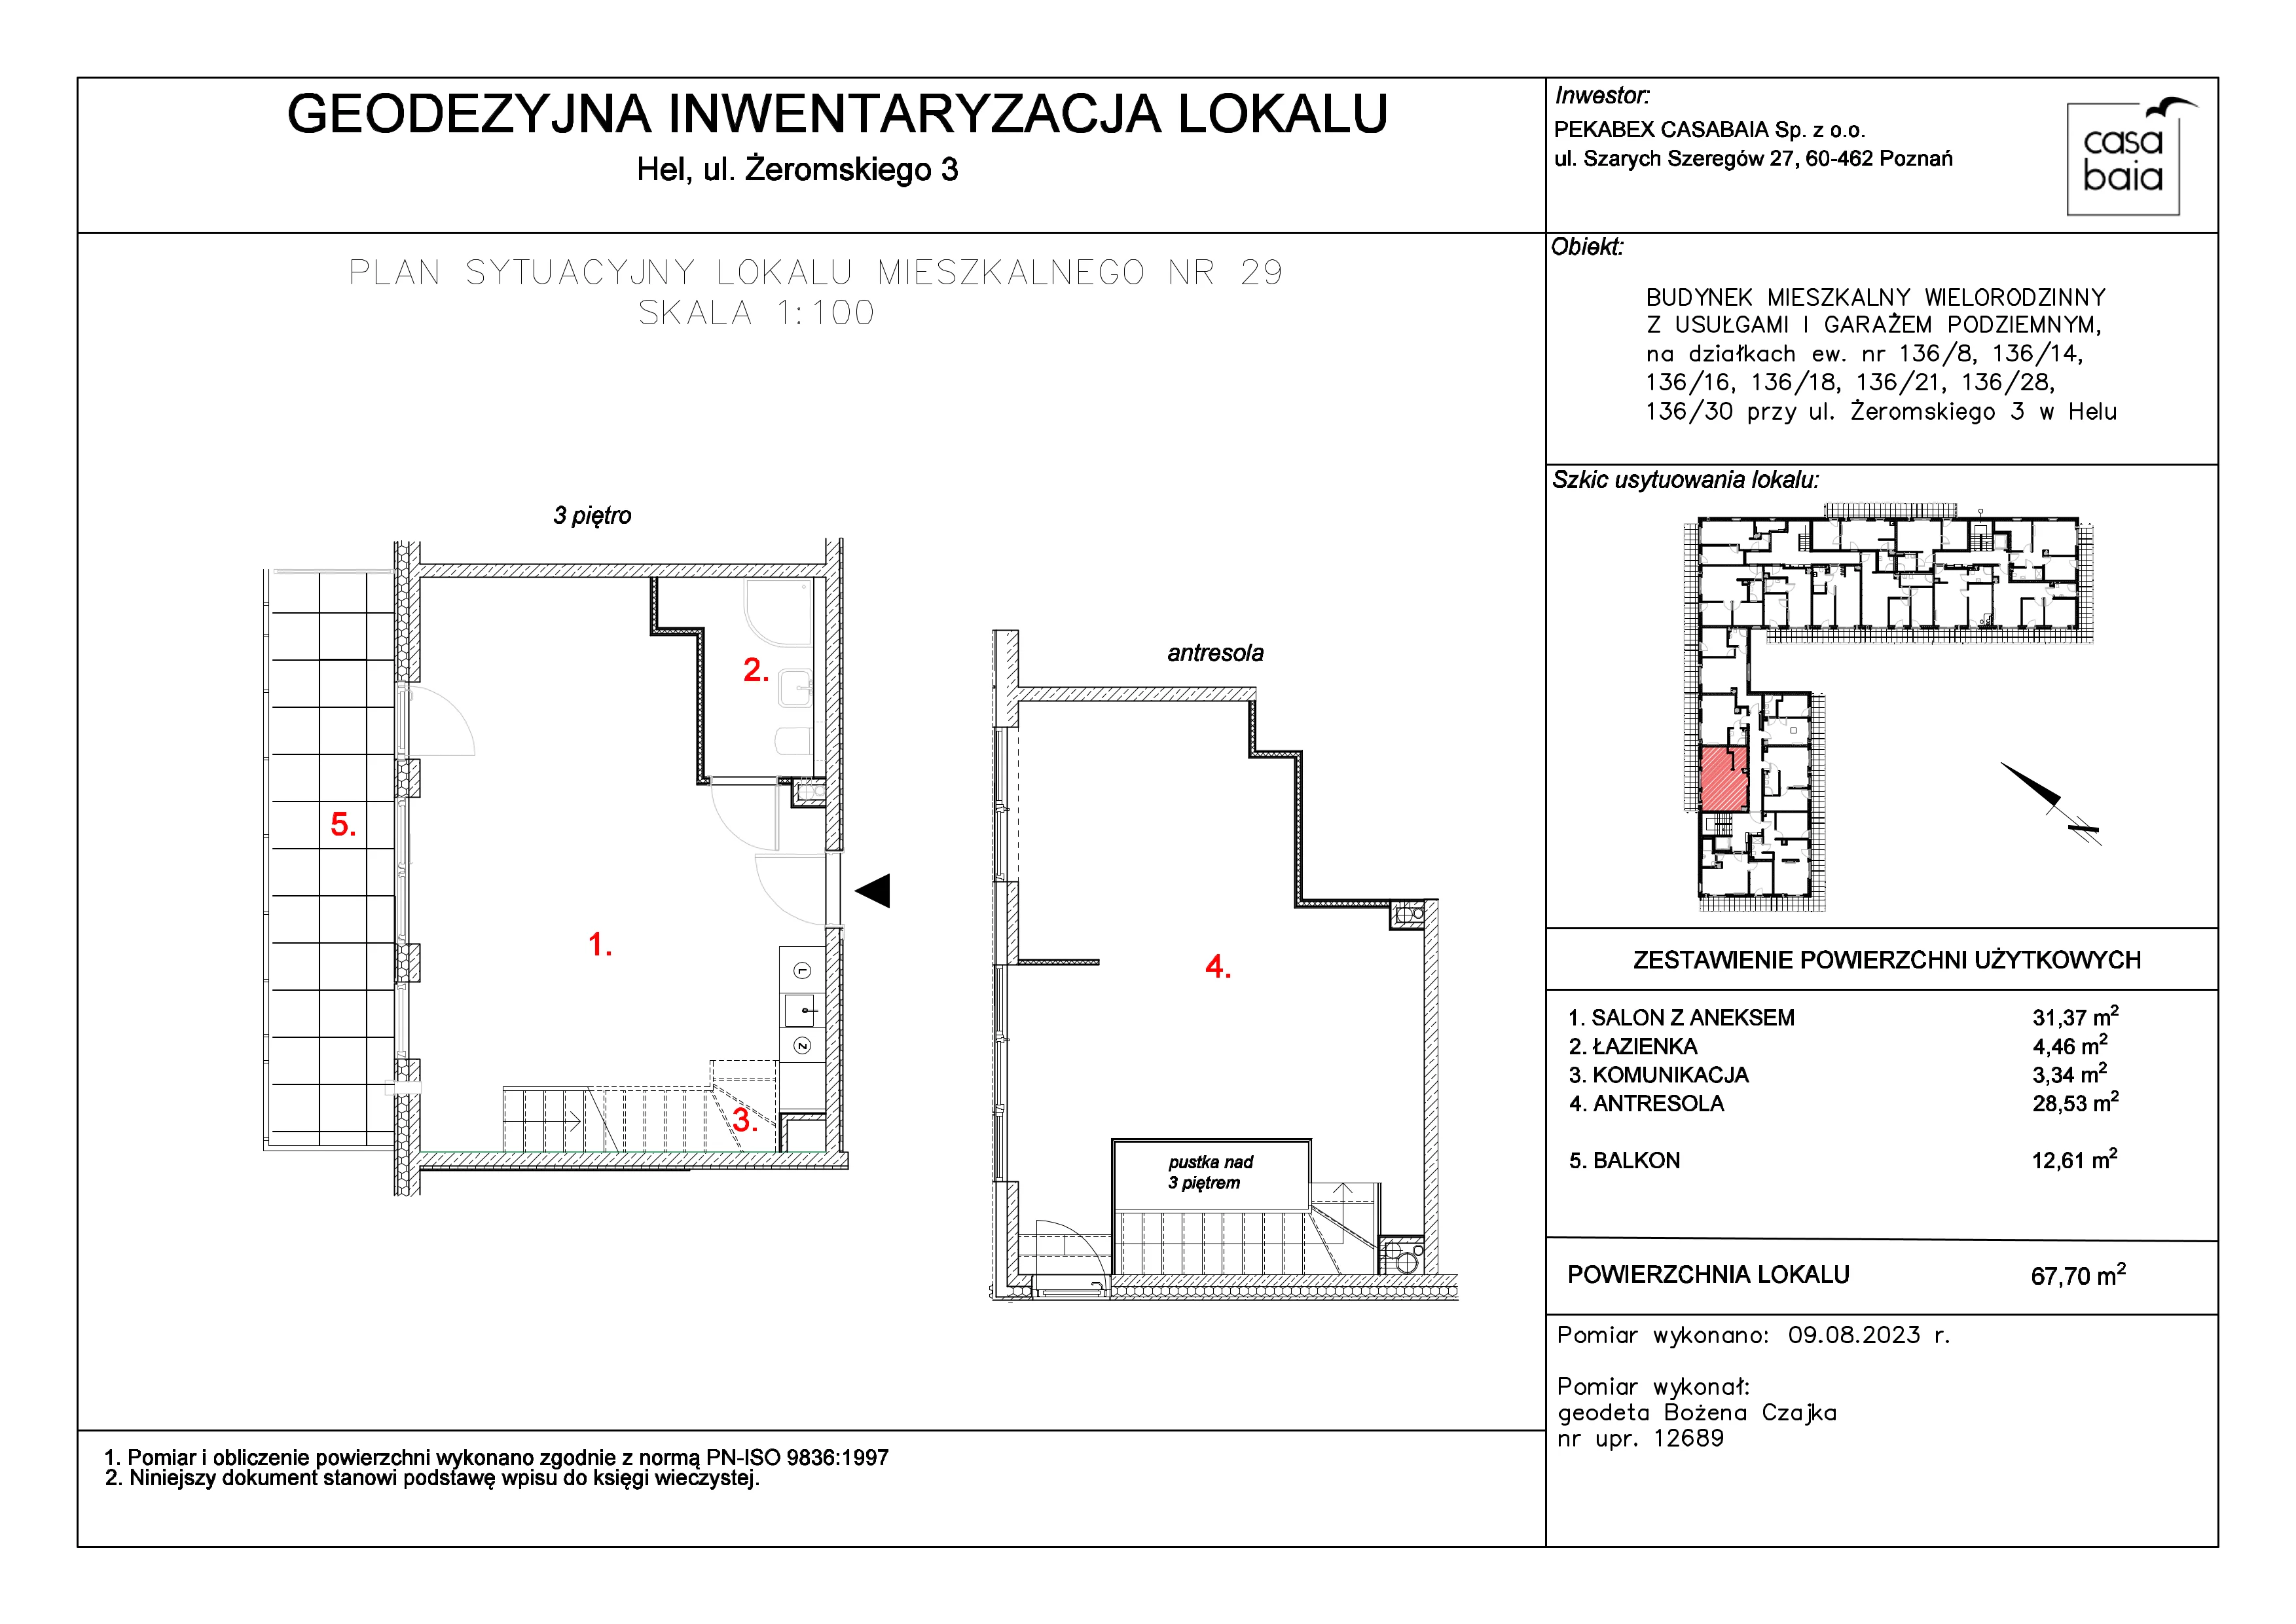 Mieszkanie 67,70 m², piętro 3, oferta nr K4, CASA BAIA, Hel, ul. Stefana Żeromskiego 3